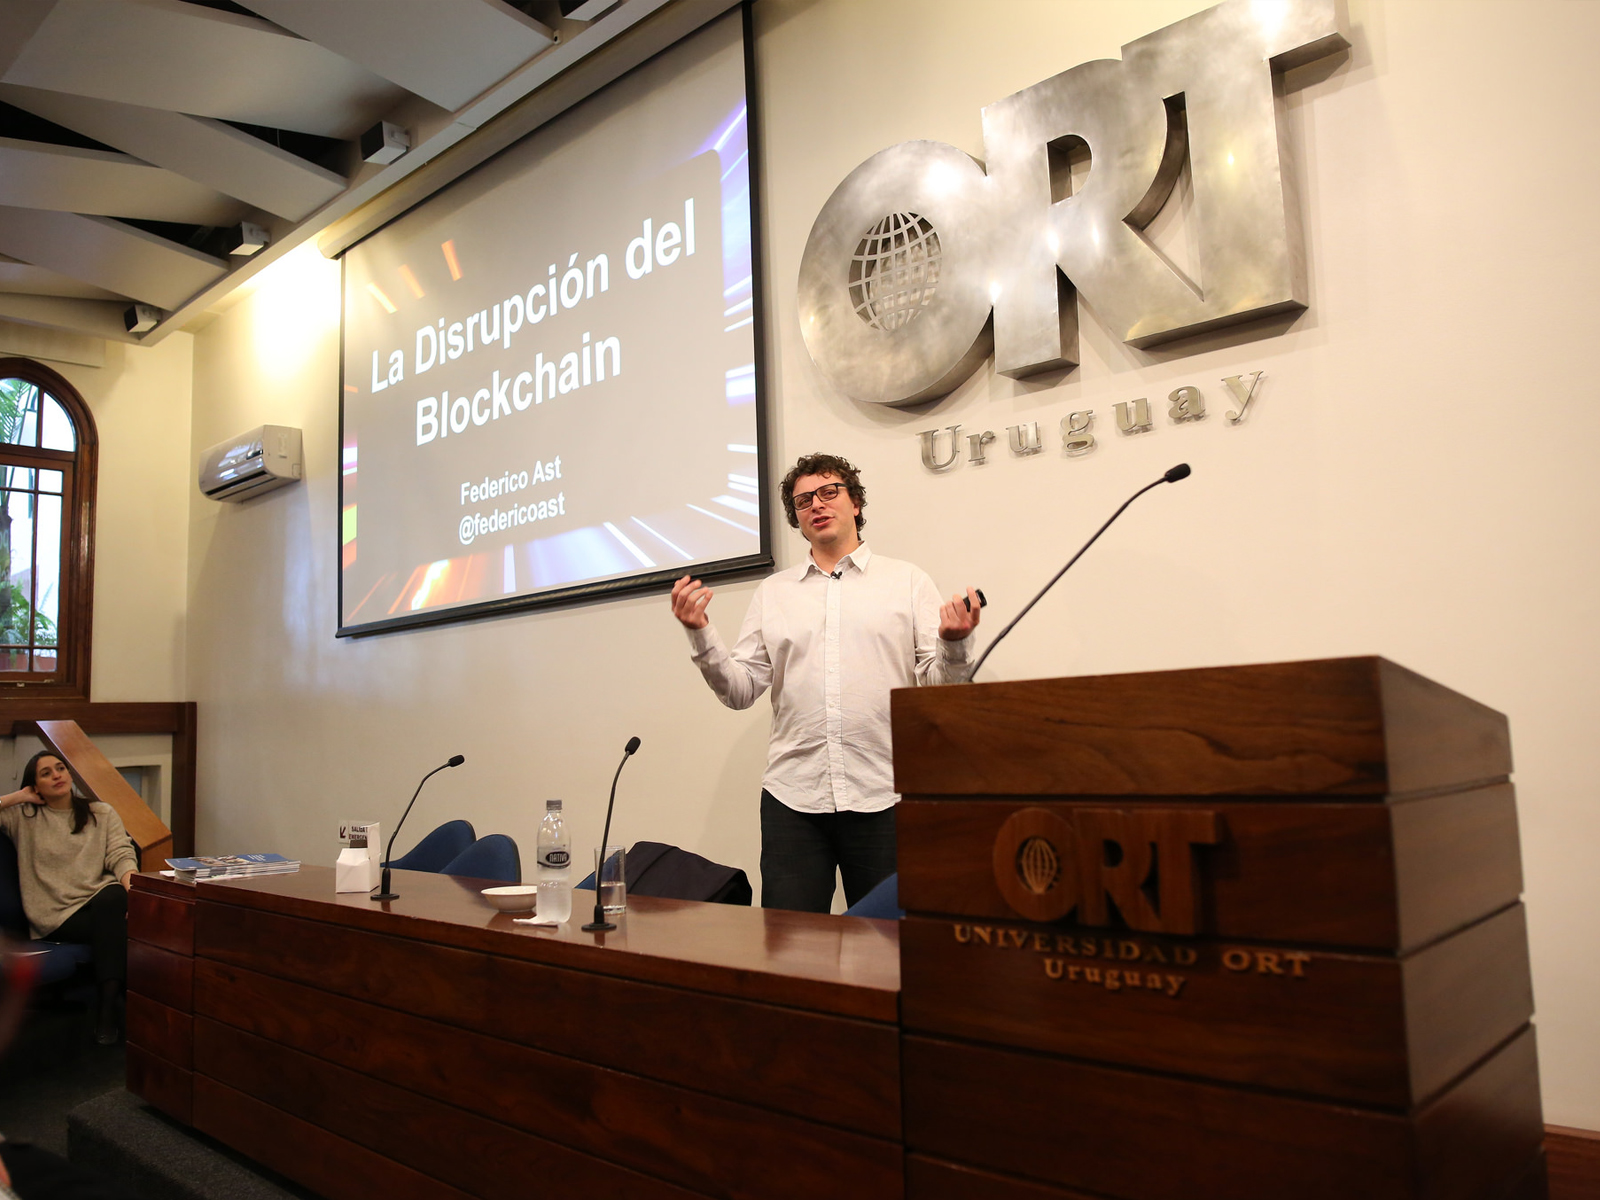 La disrupción del blockchain - Federico Ast - Universidad ORT Uruguay